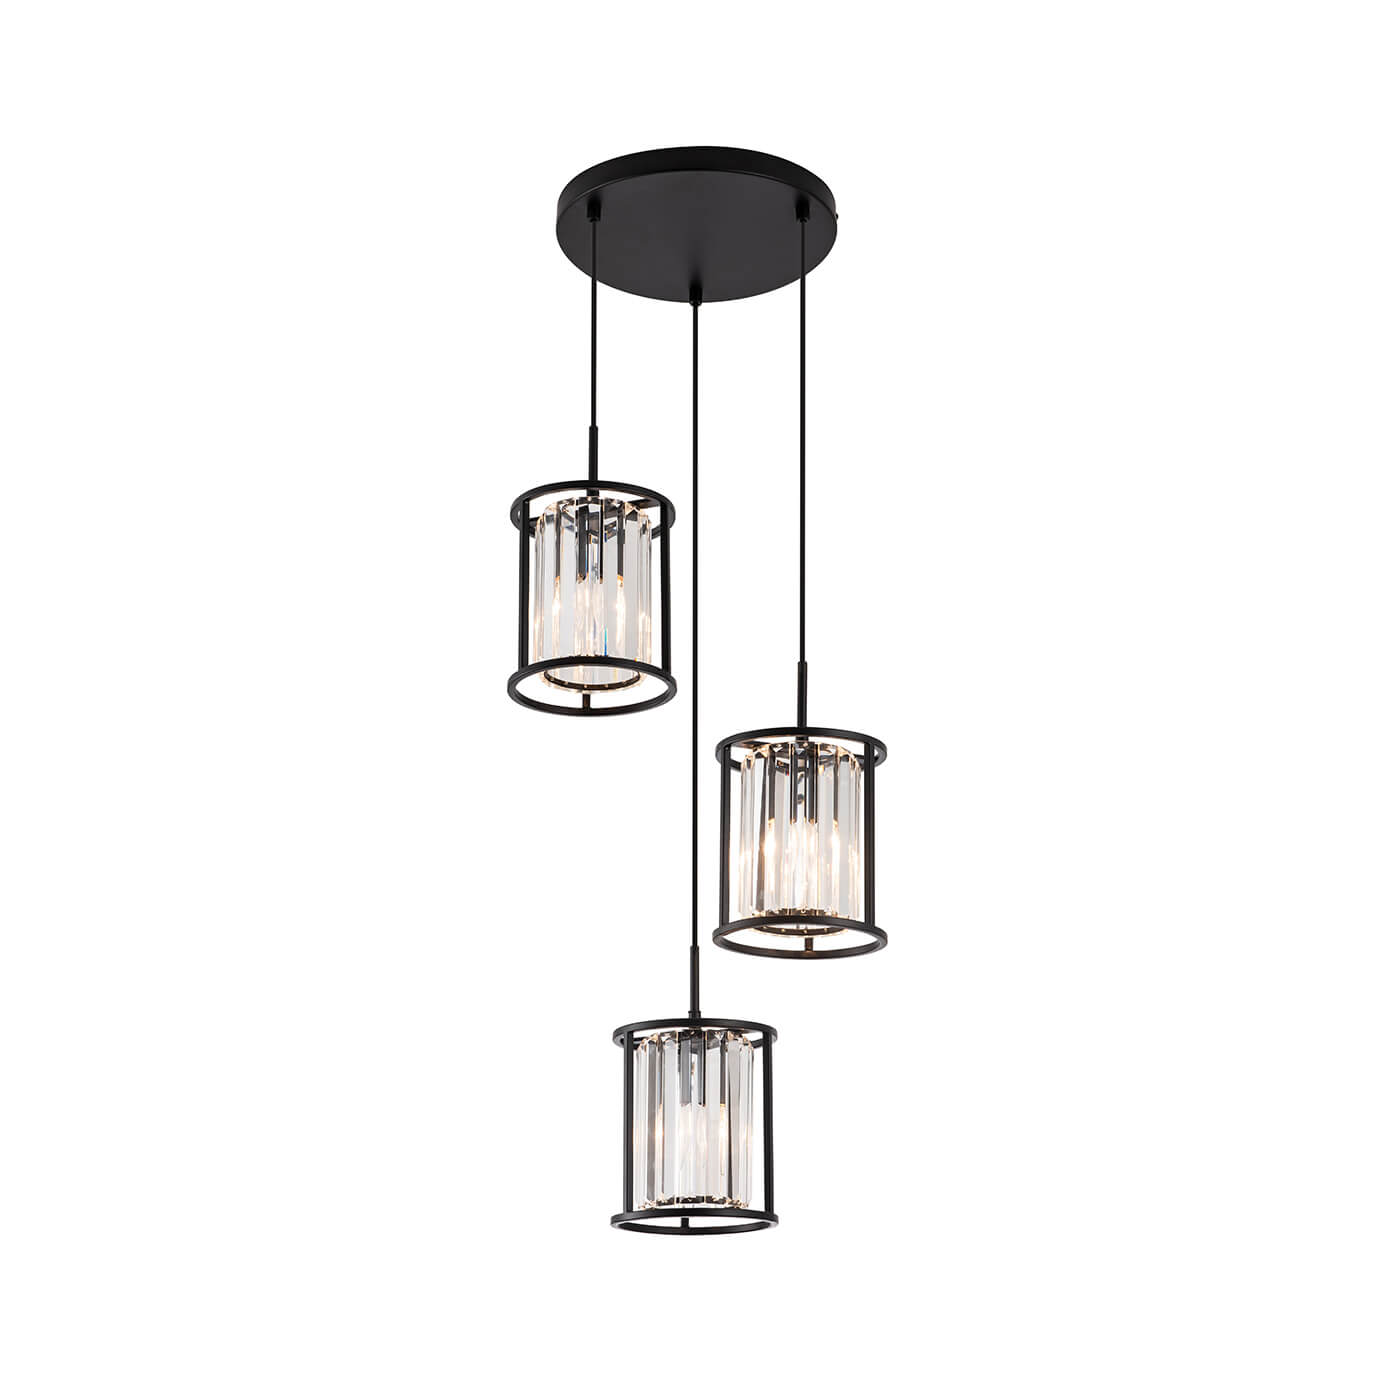 Cauti o lampa suspendata neagra RONDA S3S din sticla, design modern, elegant, pentru living, dining sau dormitor din colectia de lustre si candelabre Domicilio?